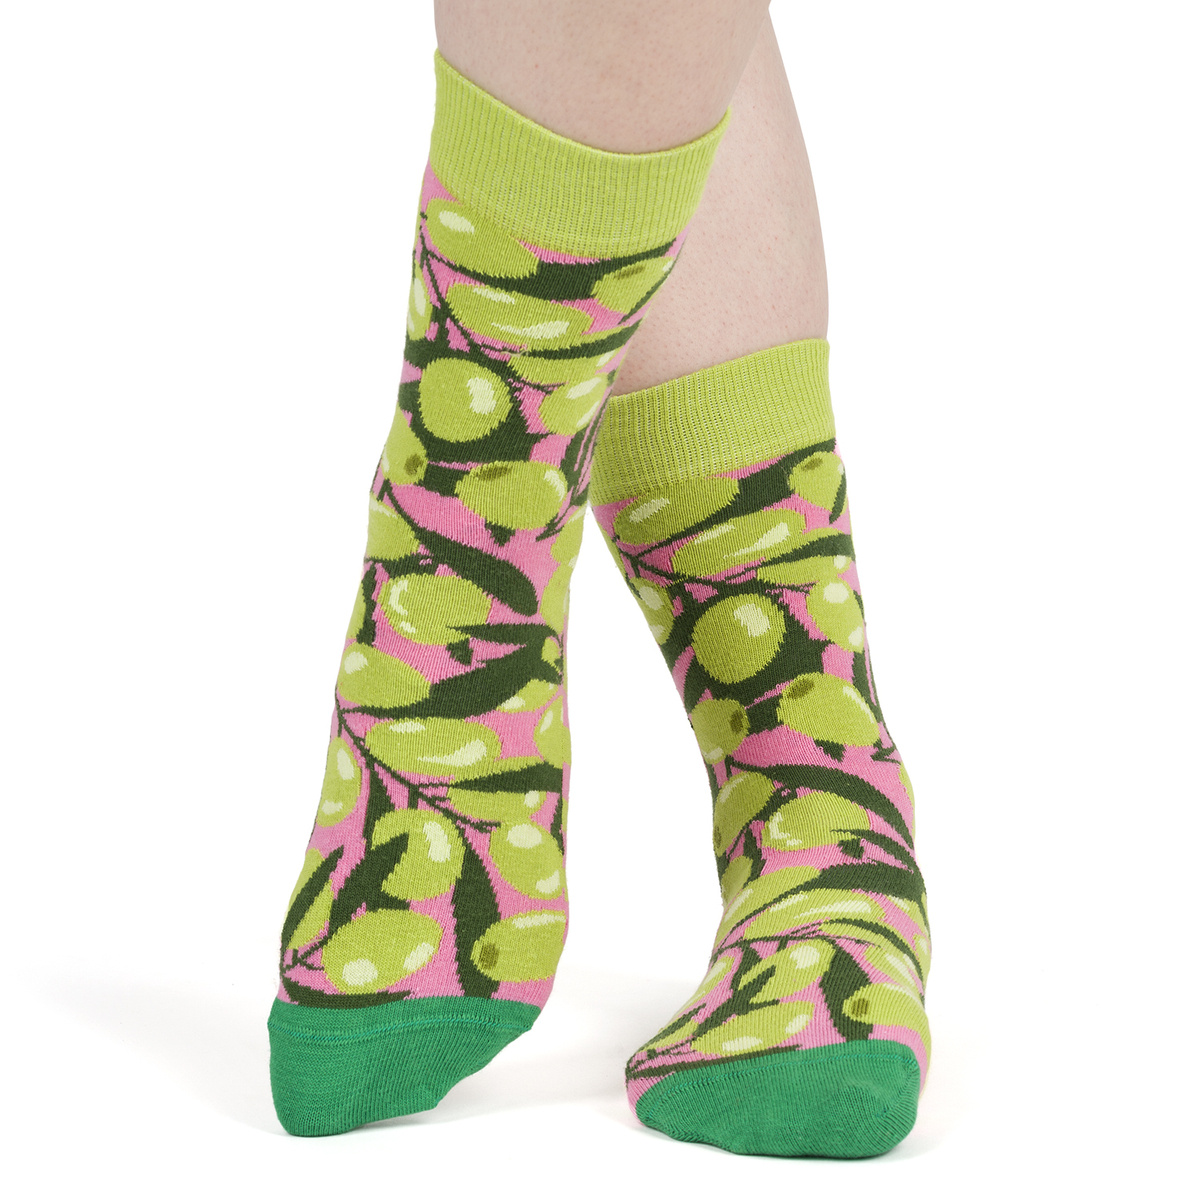 3 x Divertidos calcetines de mujer SOXO GOOD STUFF en una lata para regalo  - 39,99 €